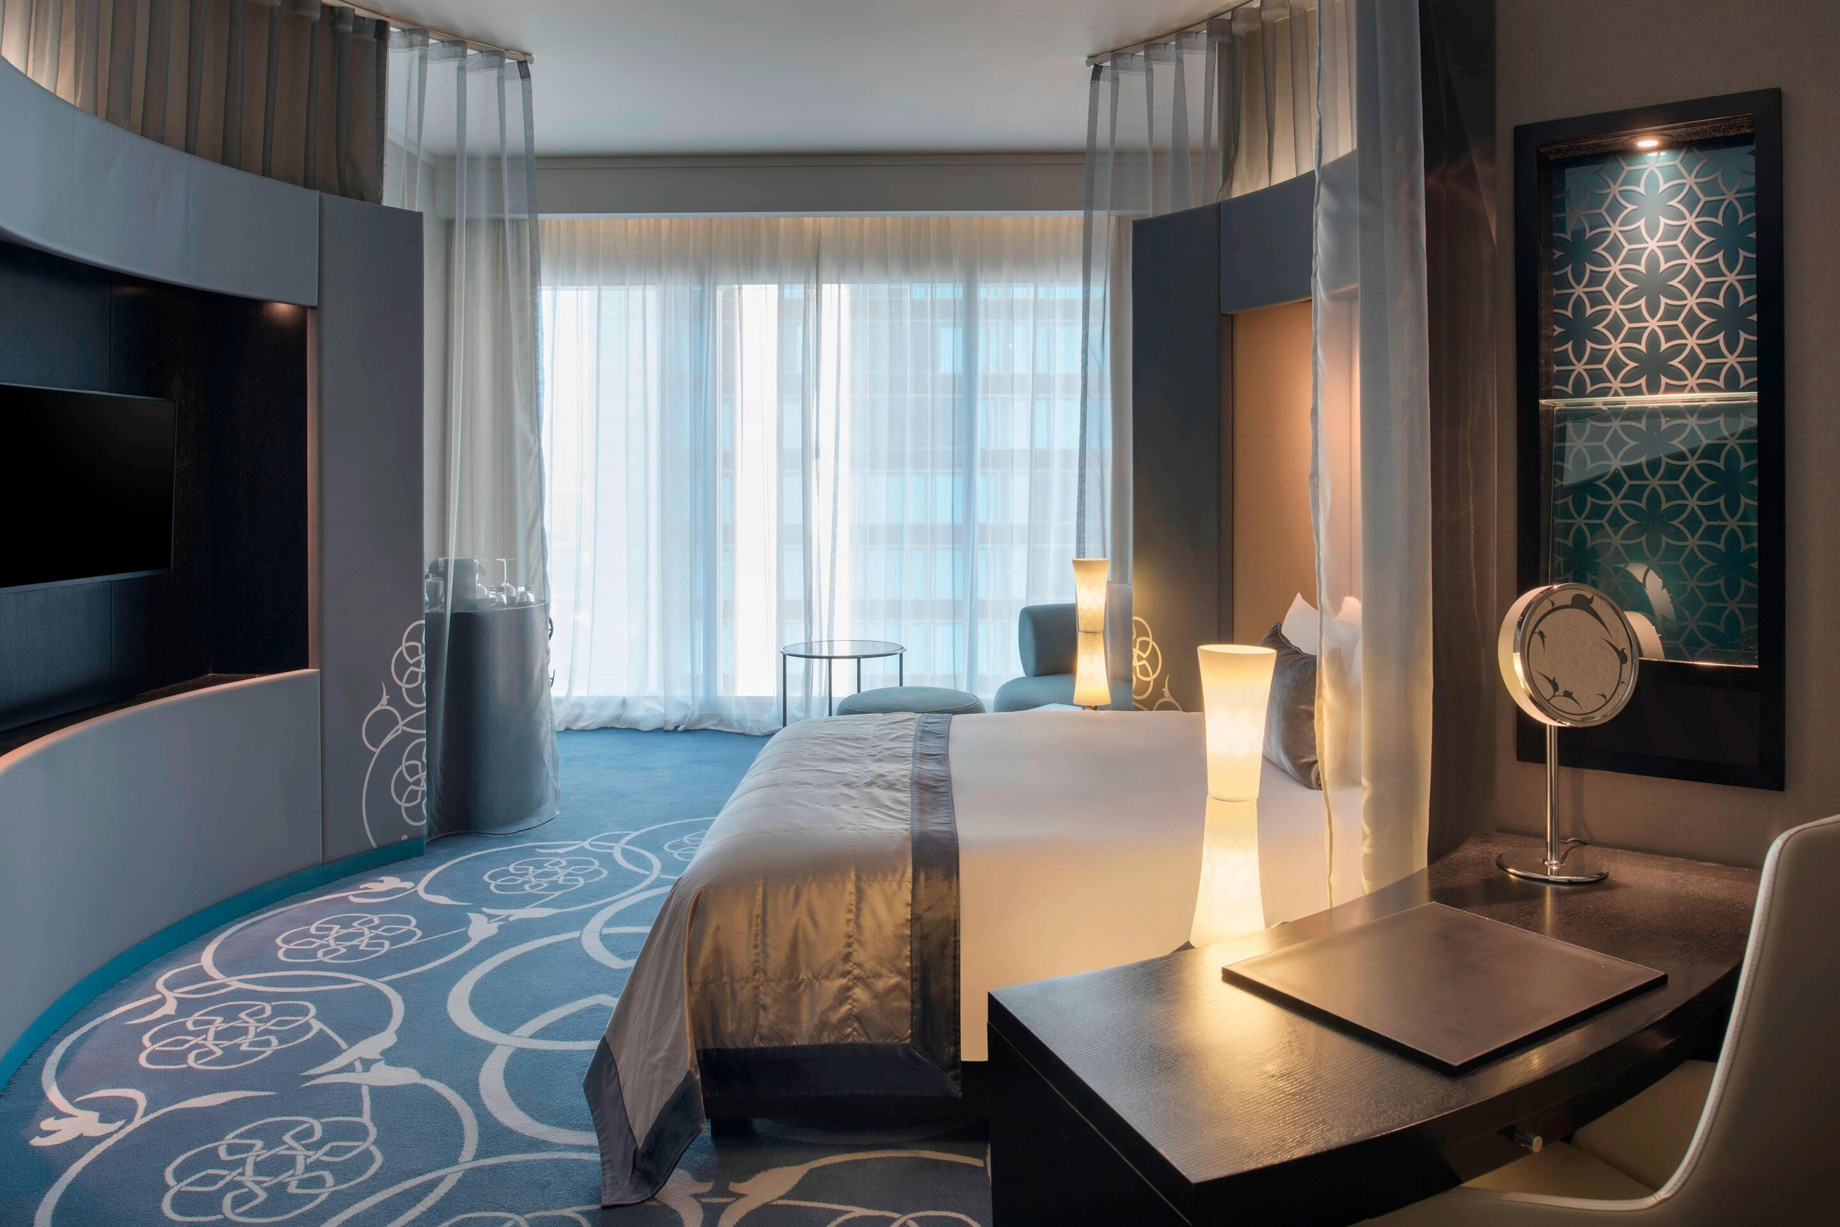 W Doha Hotel – Doha, Qatar – Spectacular King Room